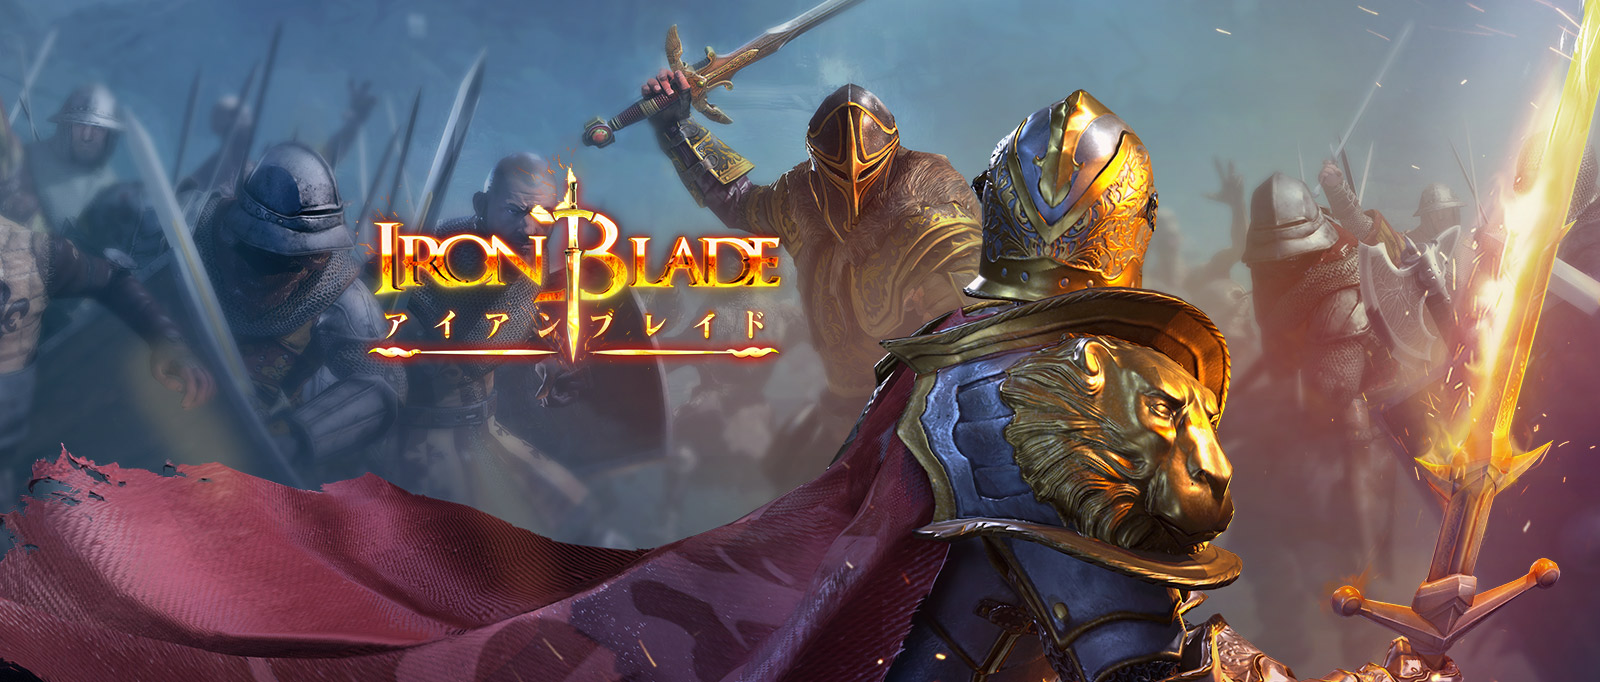 Iron Blade（アイアンブレイド）—メディーバルRPG—